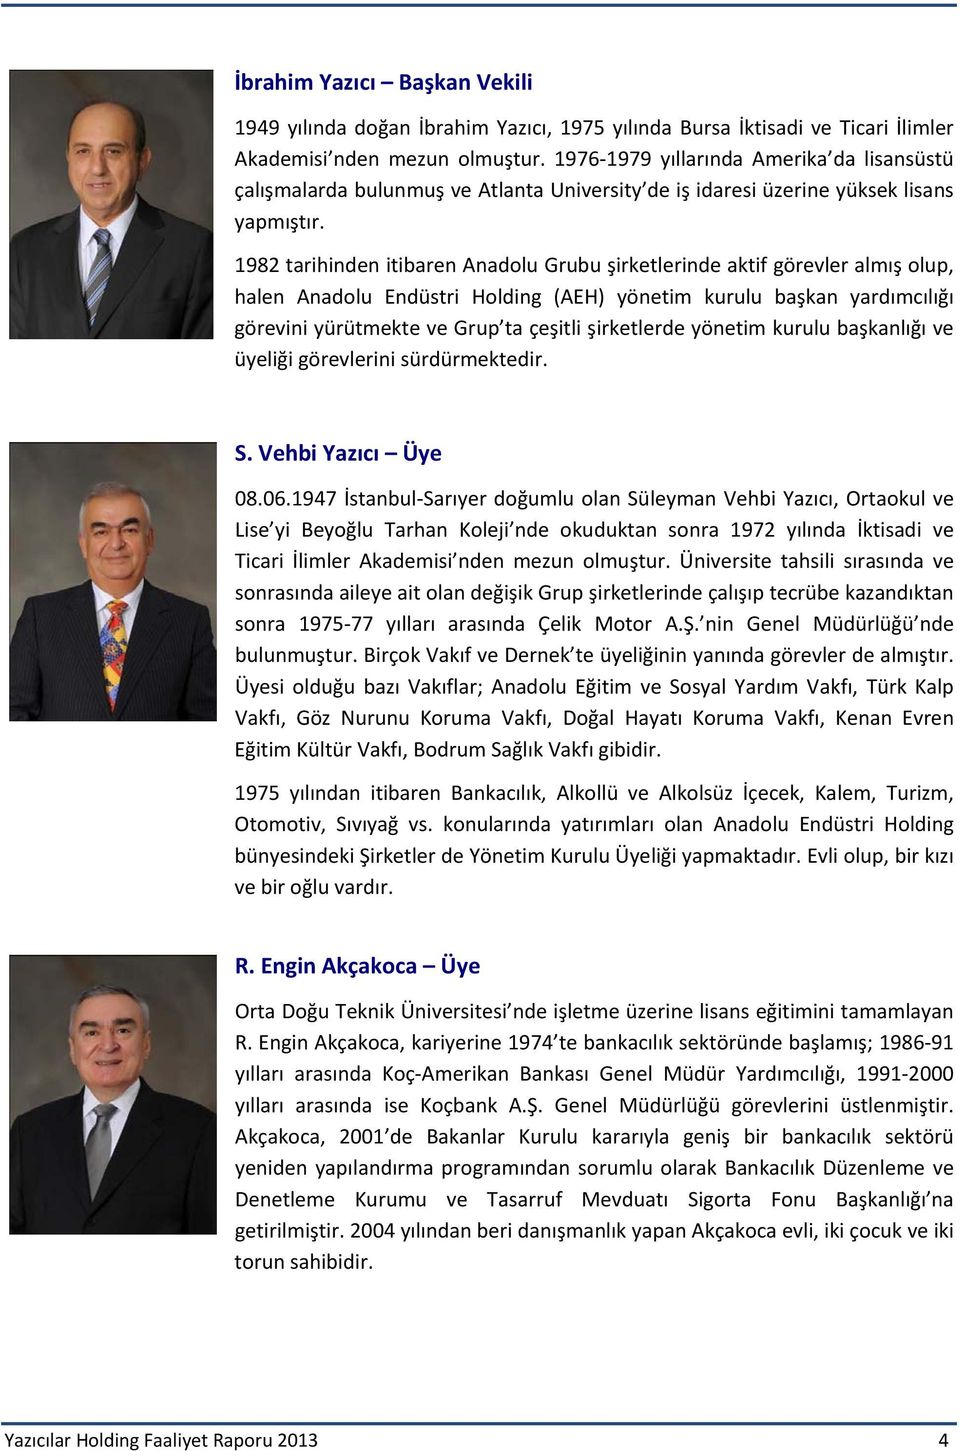 1982 tarihinden itibaren Anadolu Grubu şirketlerinde aktif görevler almış olup, halen Anadolu Endüstri Holding (AEH) yönetim kurulu başkan yardımcılığı görevini yürütmekte ve Grup ta çeşitli